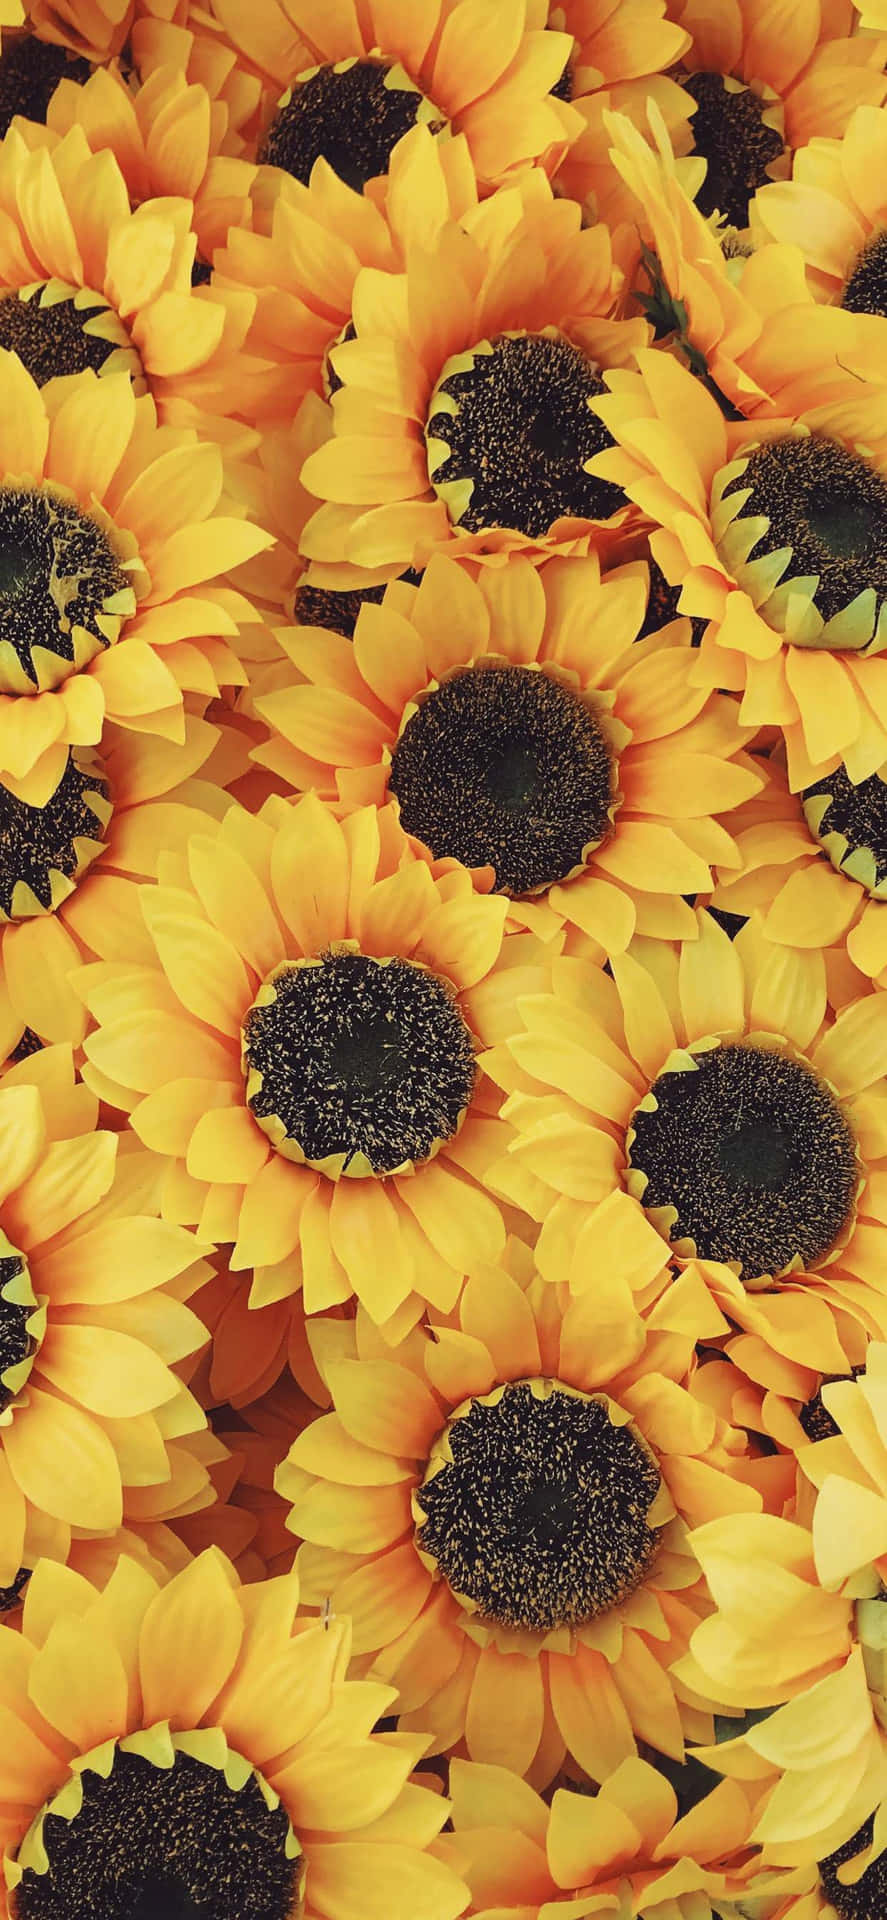 Verleihensie Ihrem Iphone Mit Dieser Wunderschönen Sonnenblumen-ästhetik Etwas Farbe Und Leben. Wallpaper